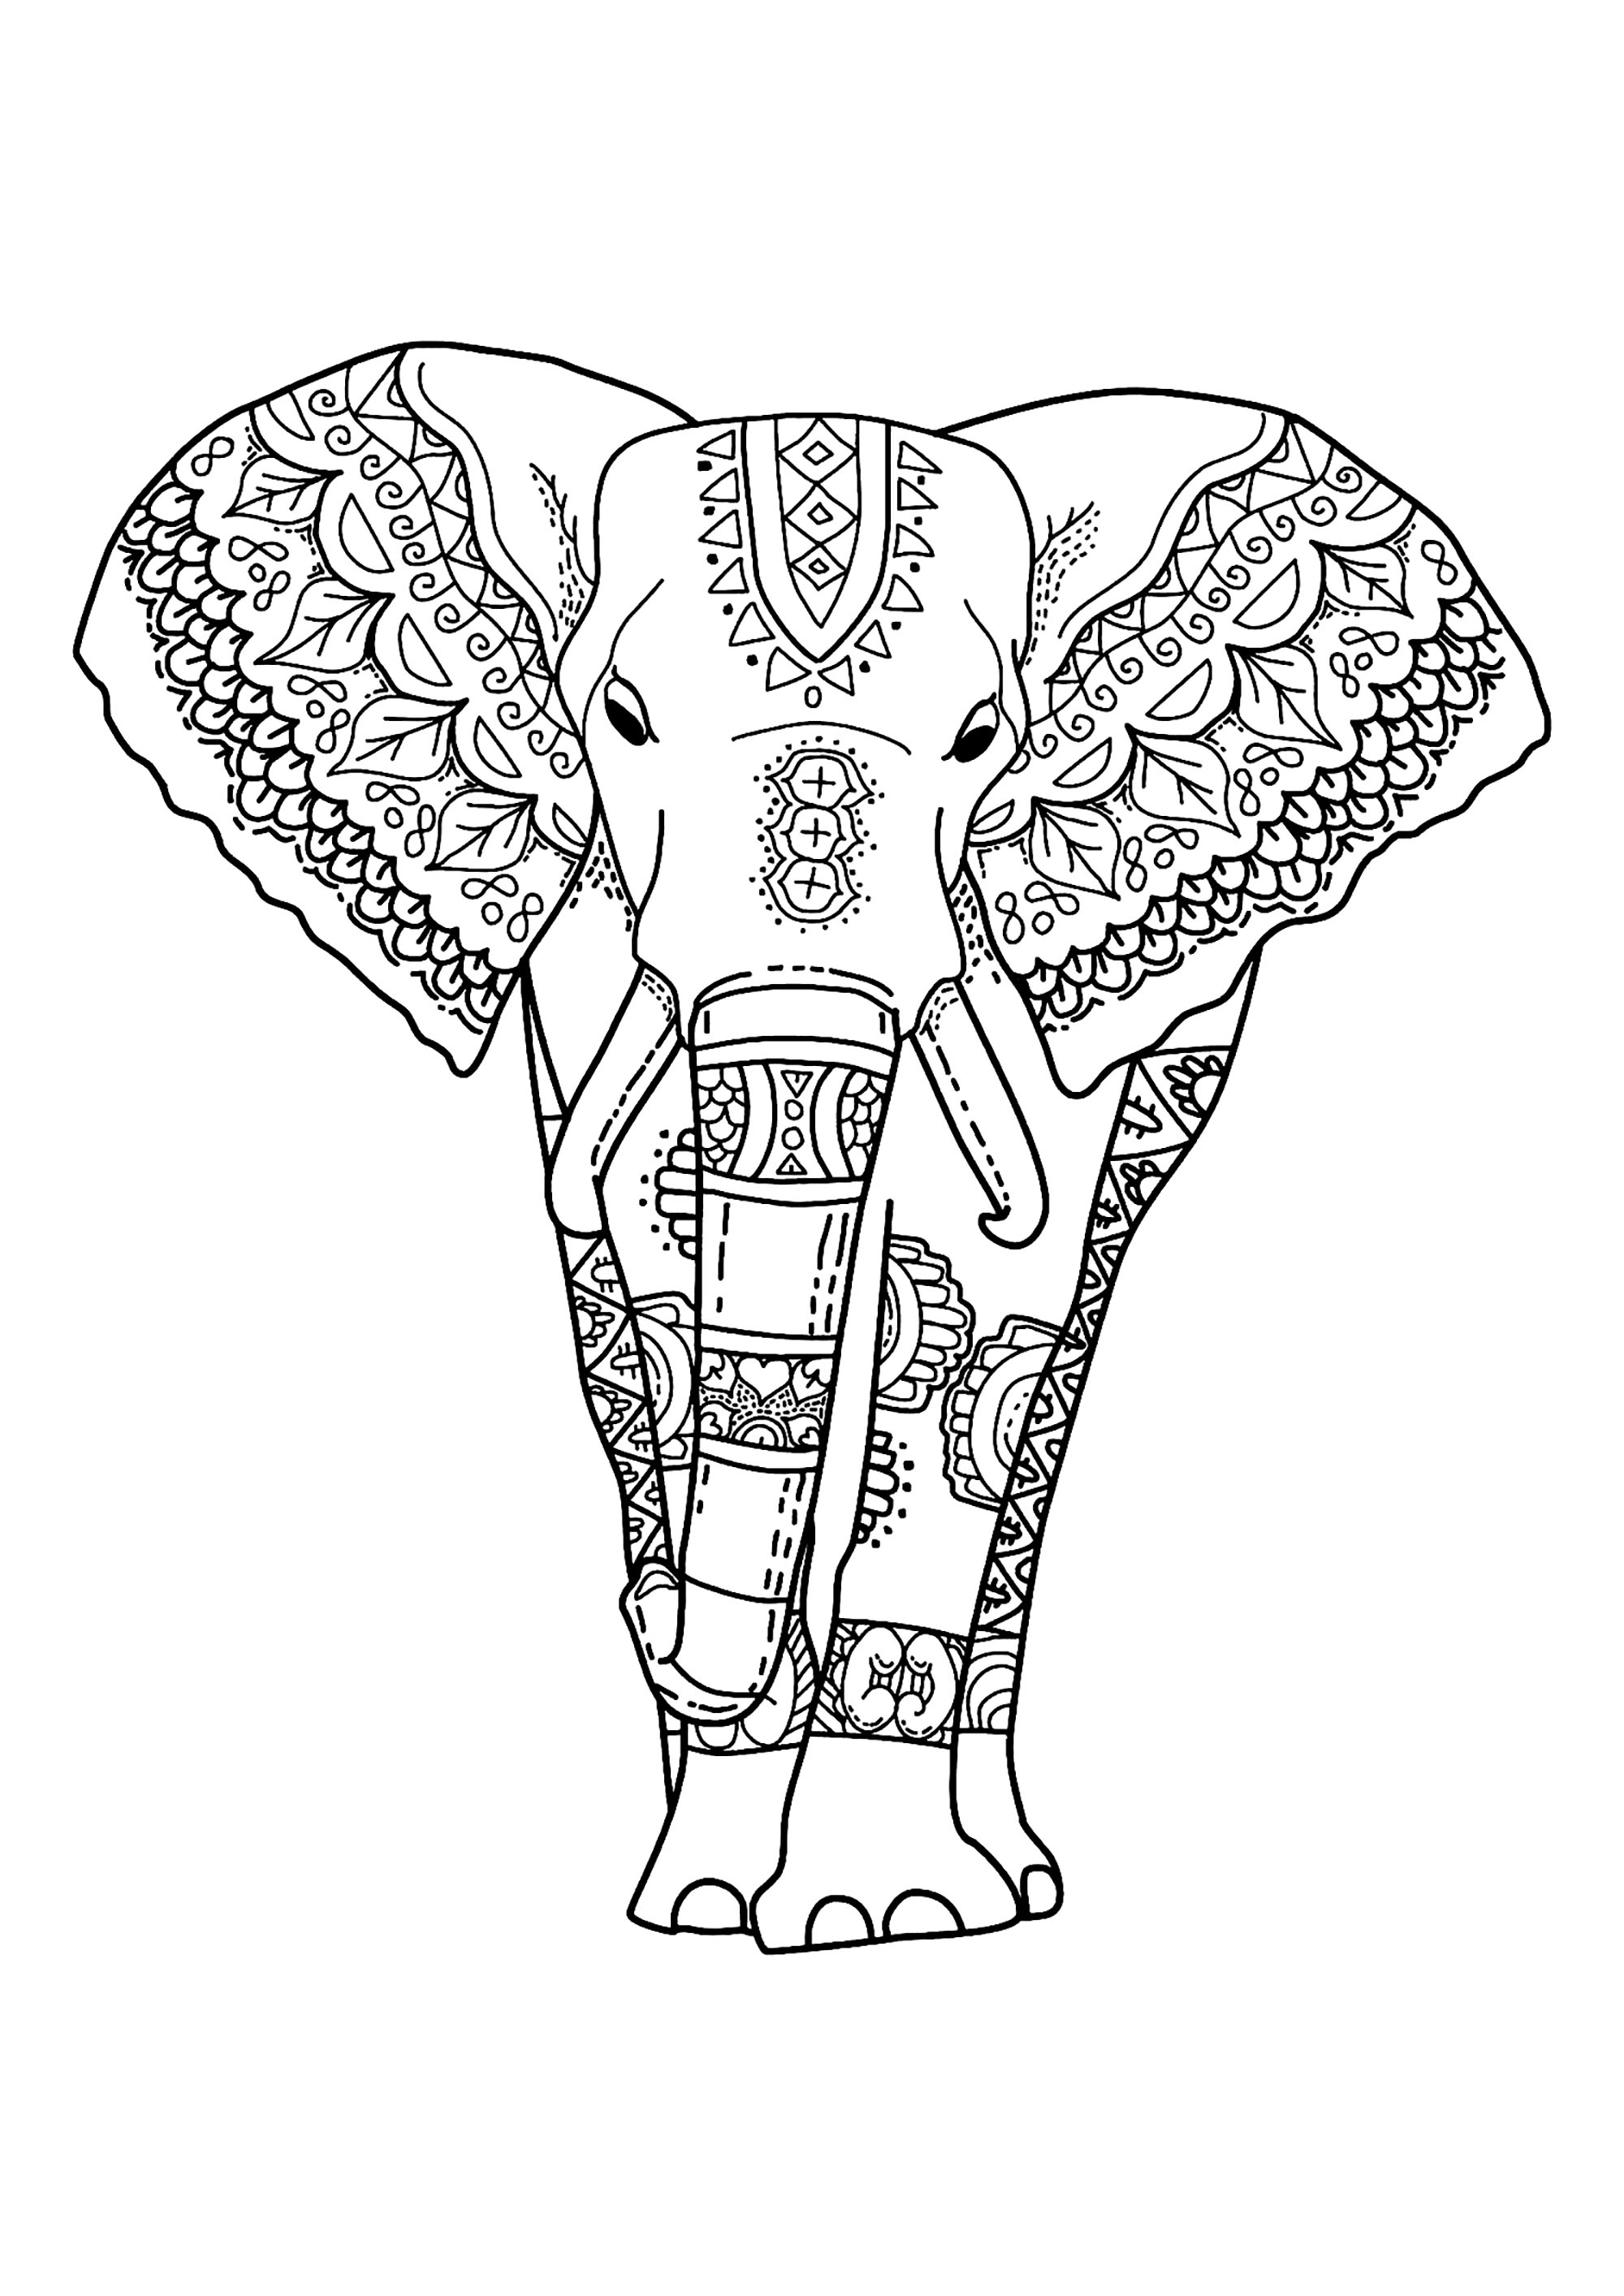 Dibujo de elefante fácil de colorear para niños